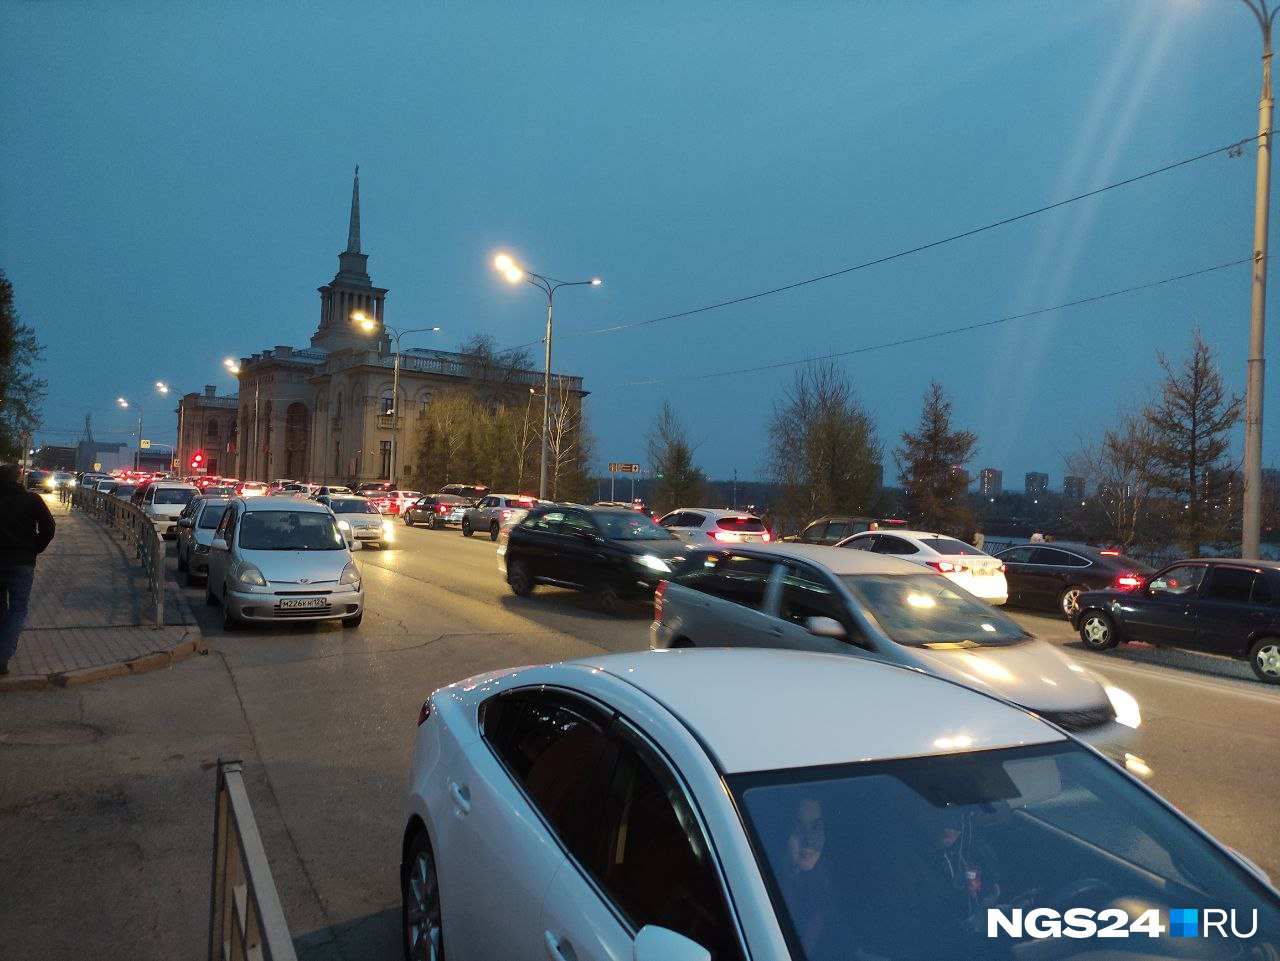 А это уже соседняя улица Дубровинского. Вечер перестает быть томным... собираются пробки. Не мудрено: через <nobr class="_">35 минут</nobr> намечается салют